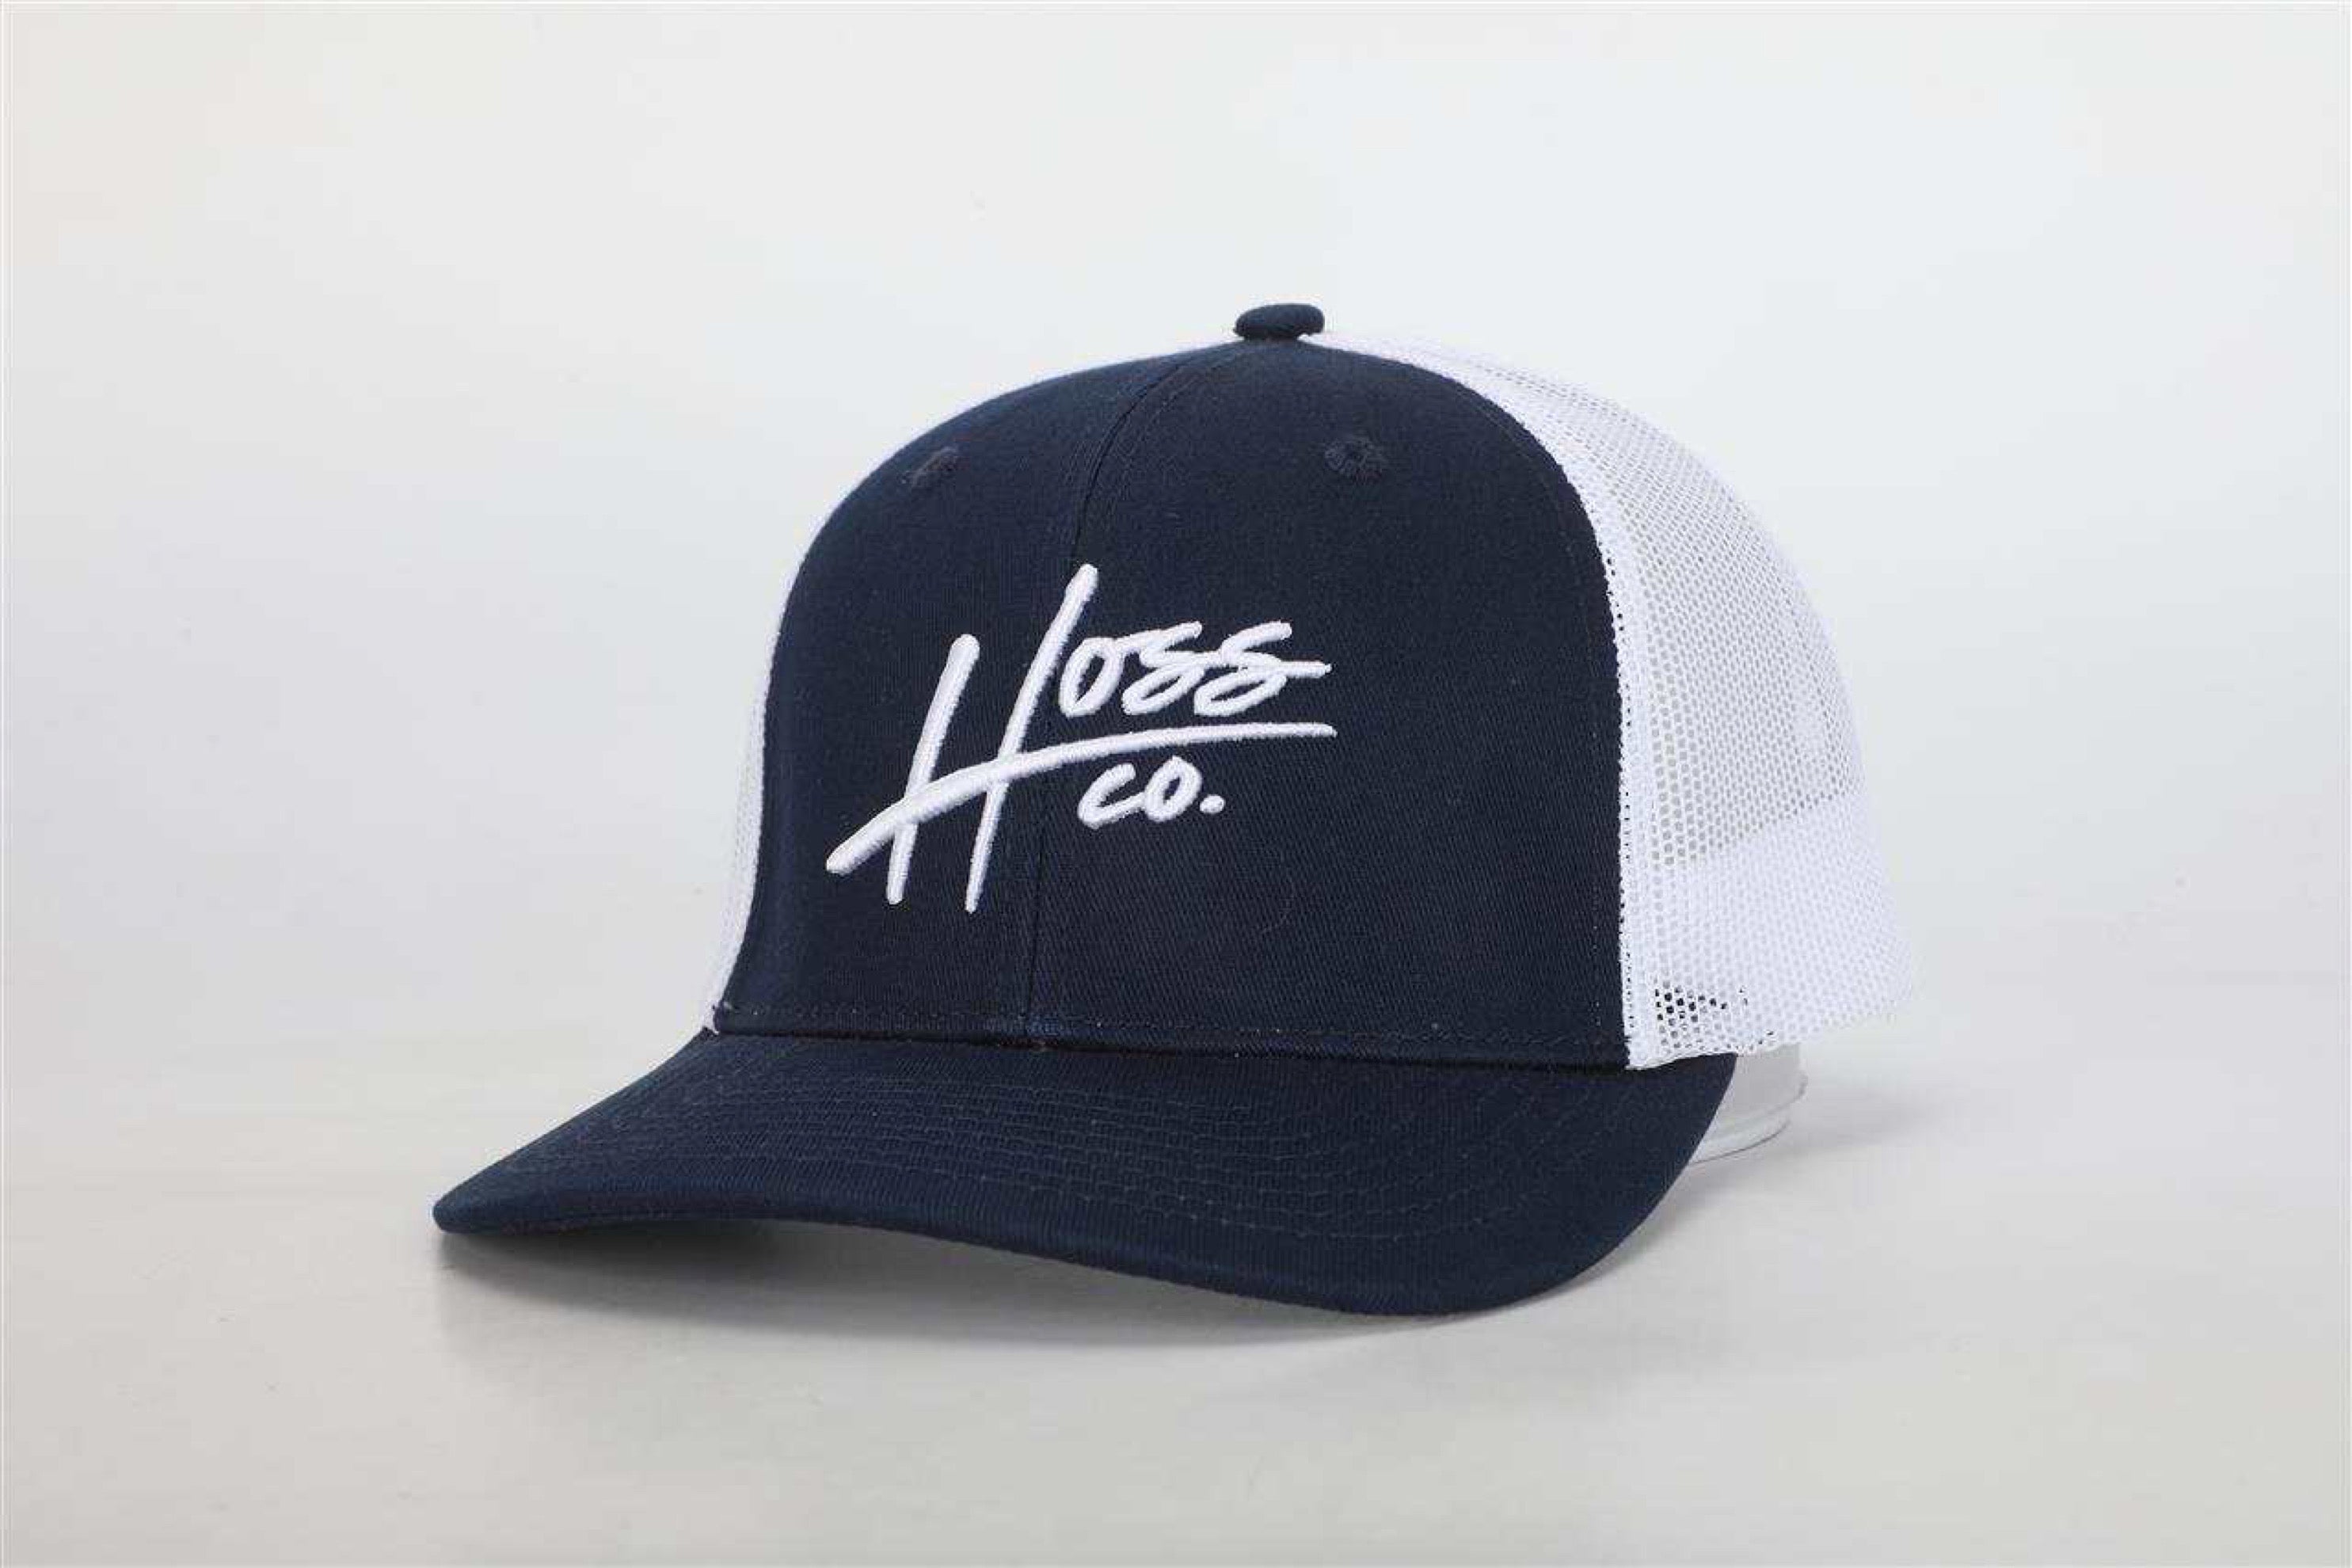 Hoss Navy/White Trucker Hat